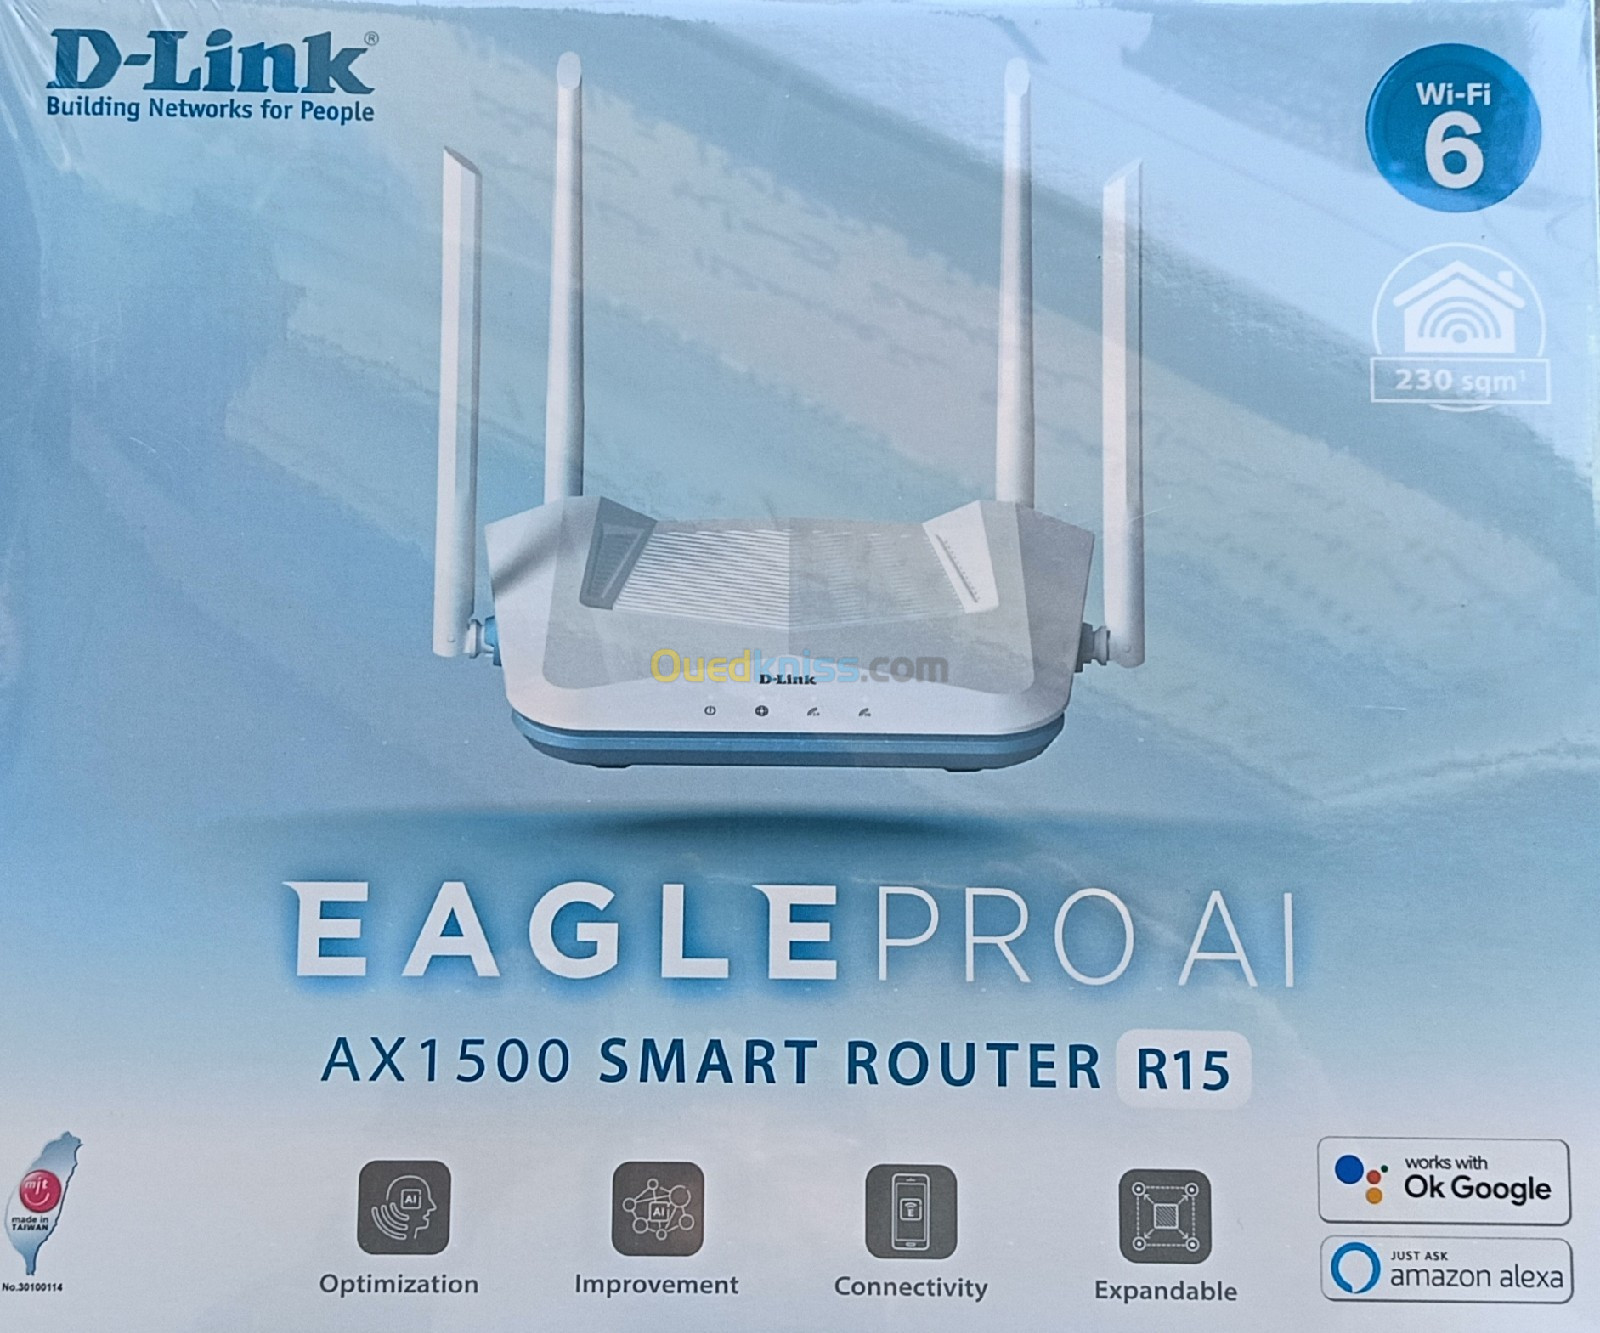 SMART ROUTER R15 AX1500 D-LINK EAGLE PRO AI